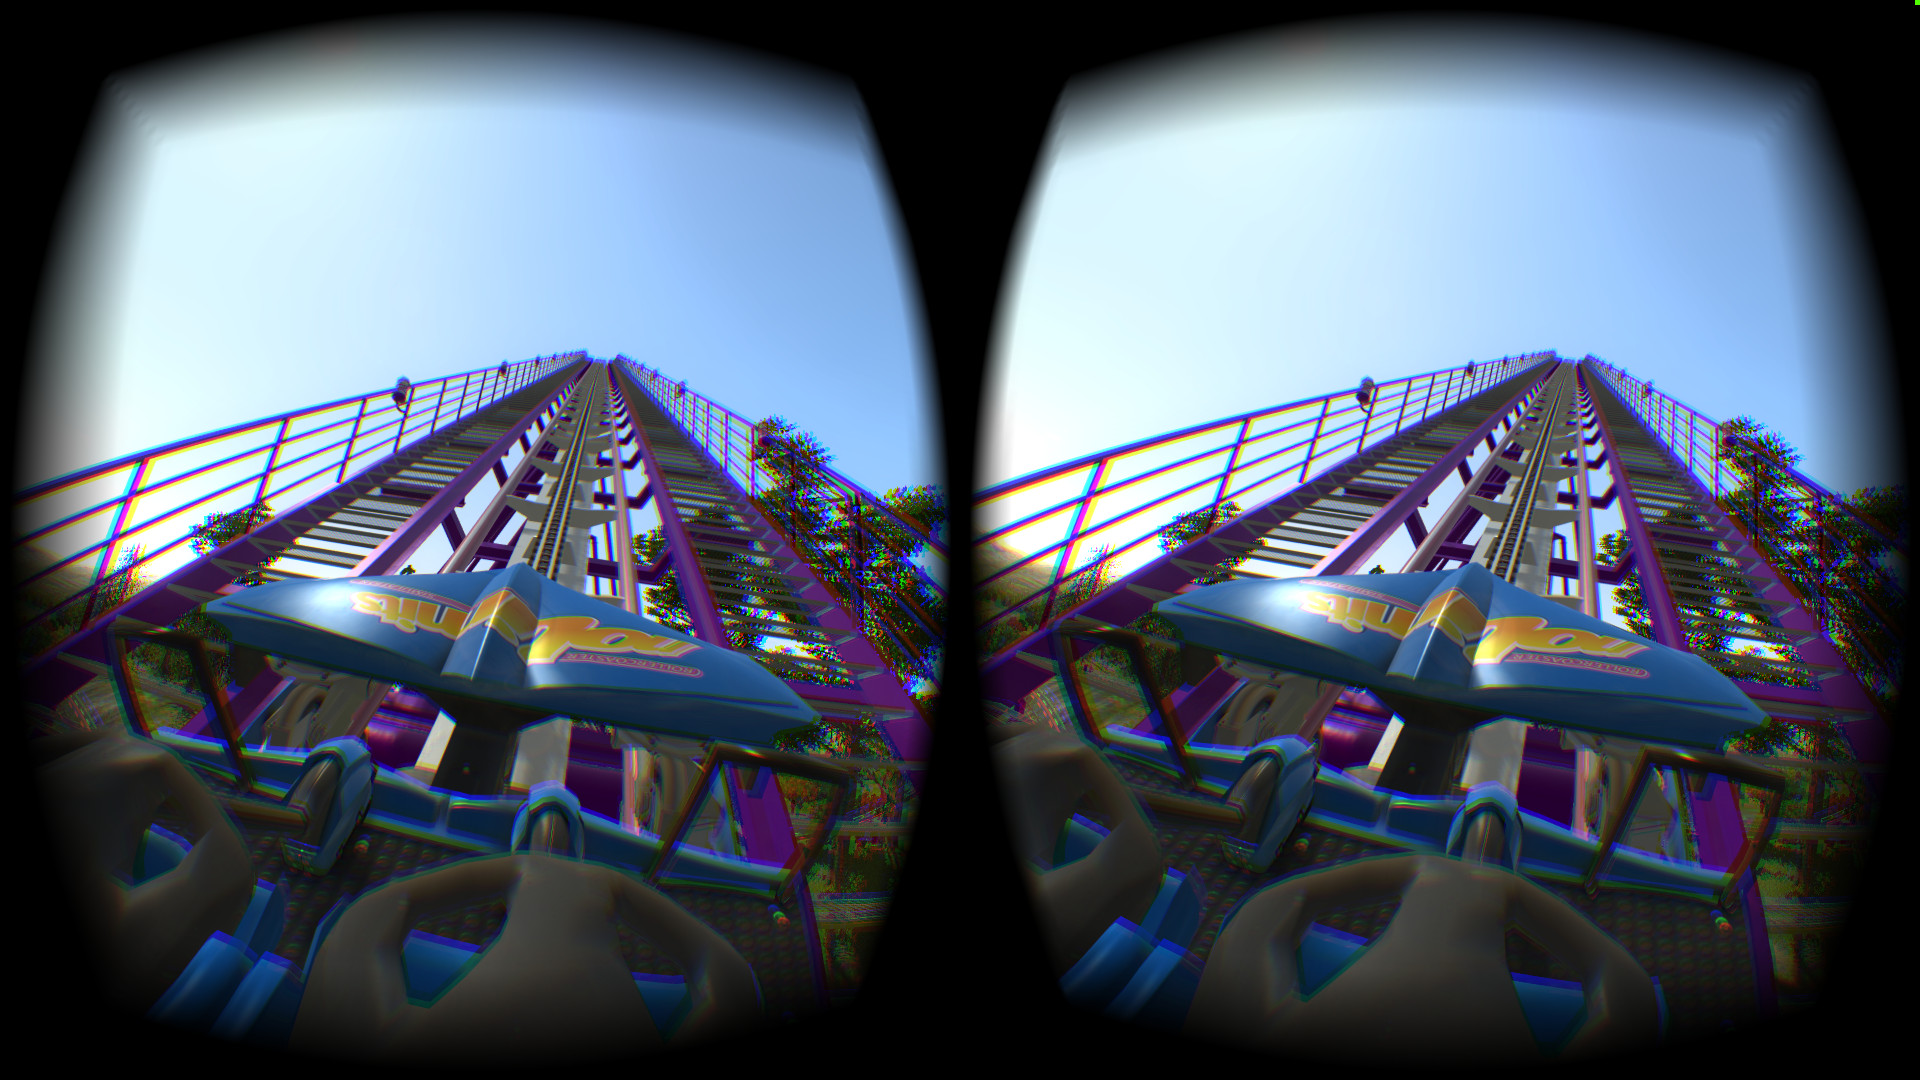 3д видео для очков виртуальной реальности смартфона. NOLIMITS 2 Roller Coaster Simulation. Epic Roller Coaster City Oculus Quest 2. NOLIMITS Roller Coaster Simulation. Американские горки для очков виртуальной реальности.